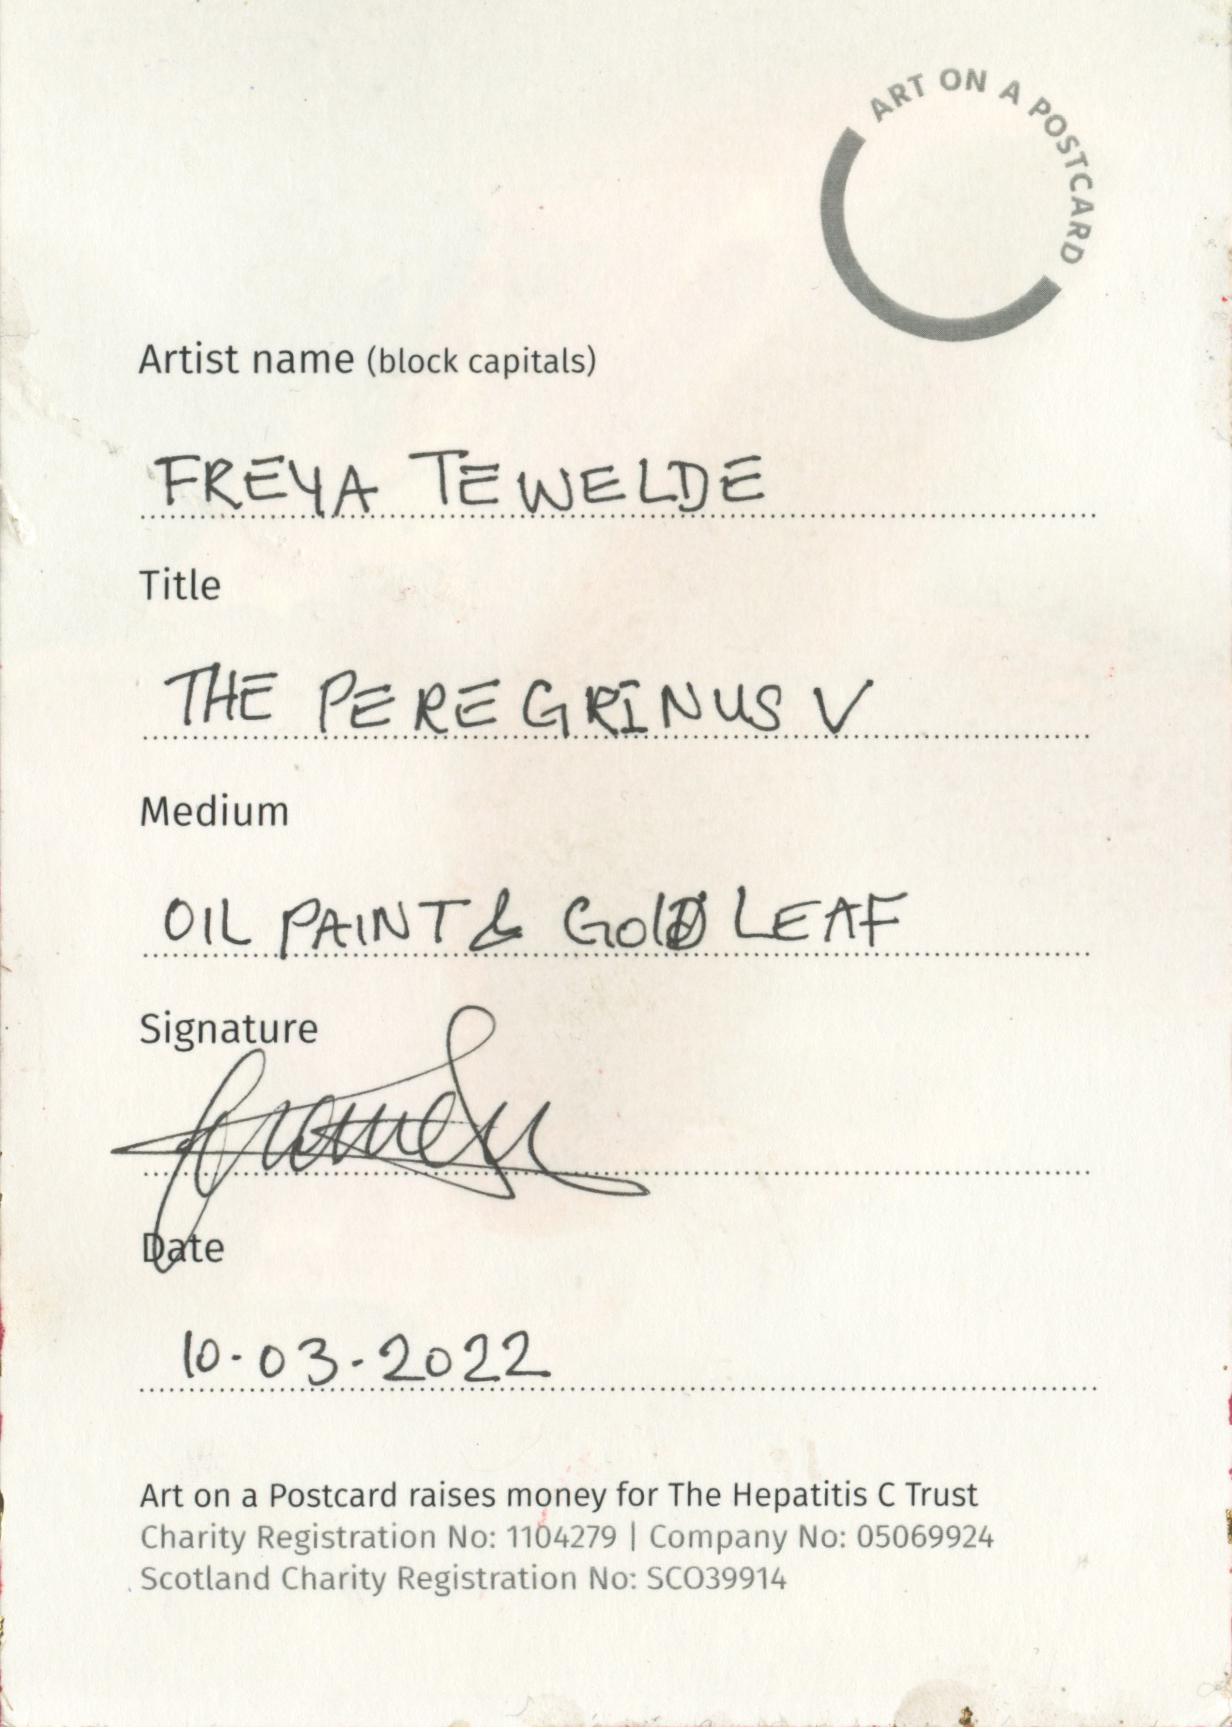 61. Freya Tewelde - The Peregrinus V - BACK